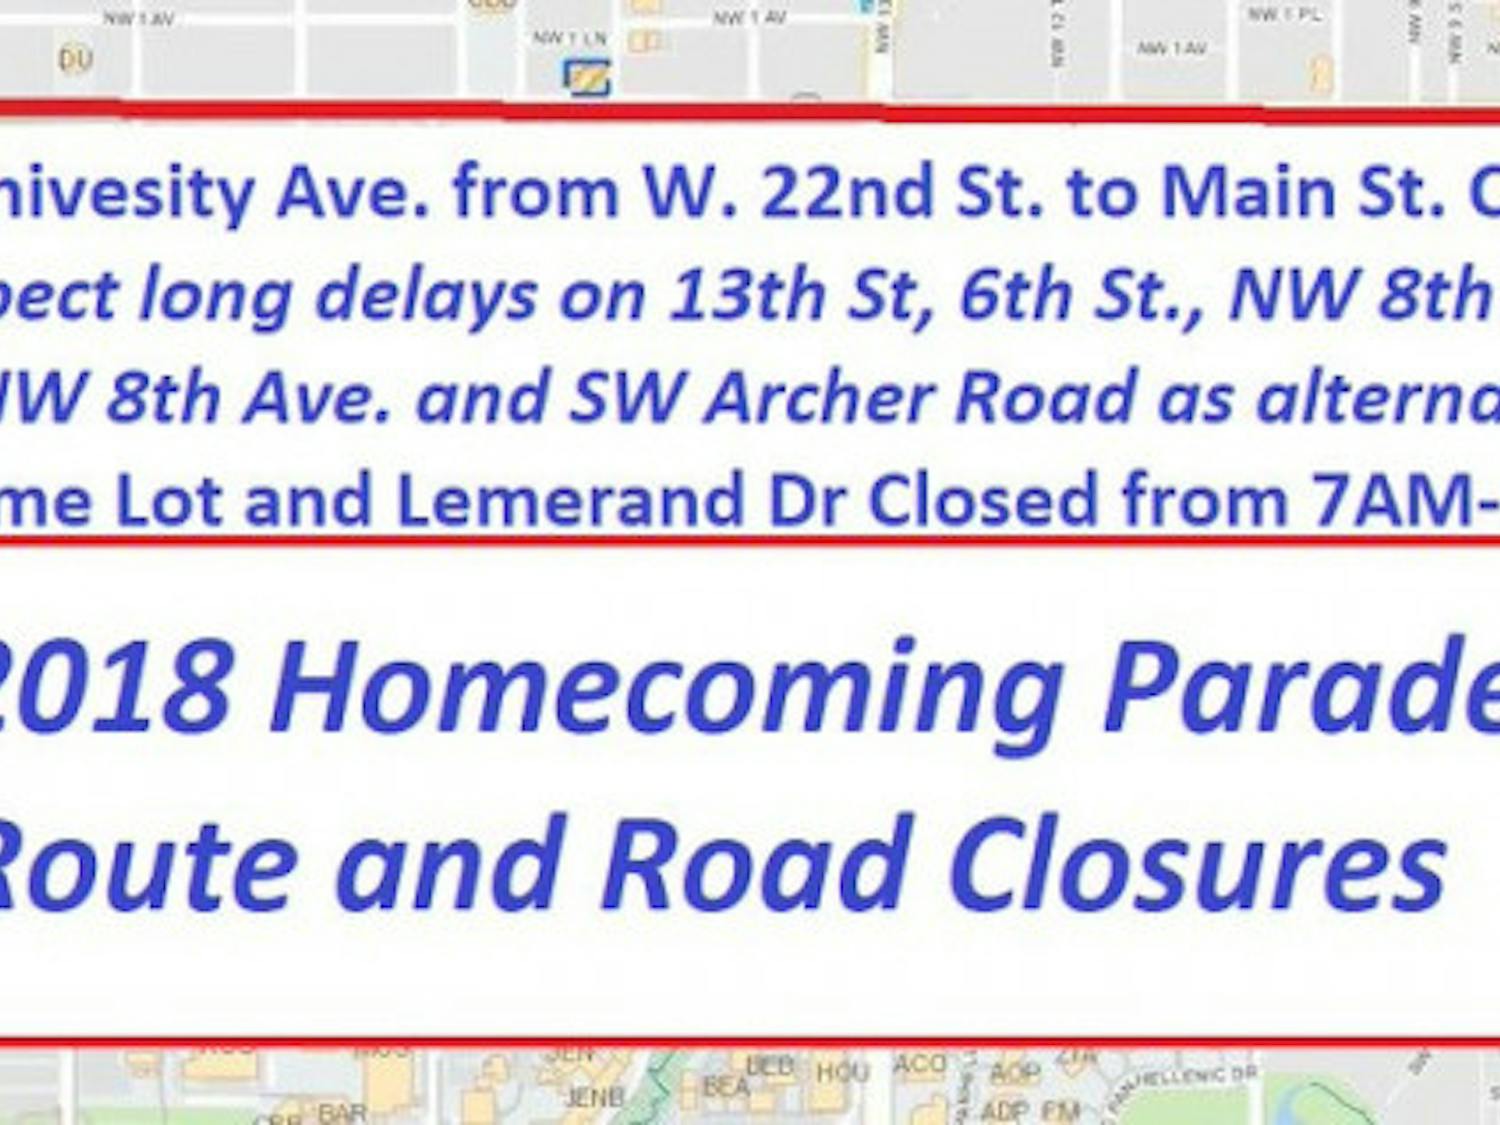 Homecoming parade road closures